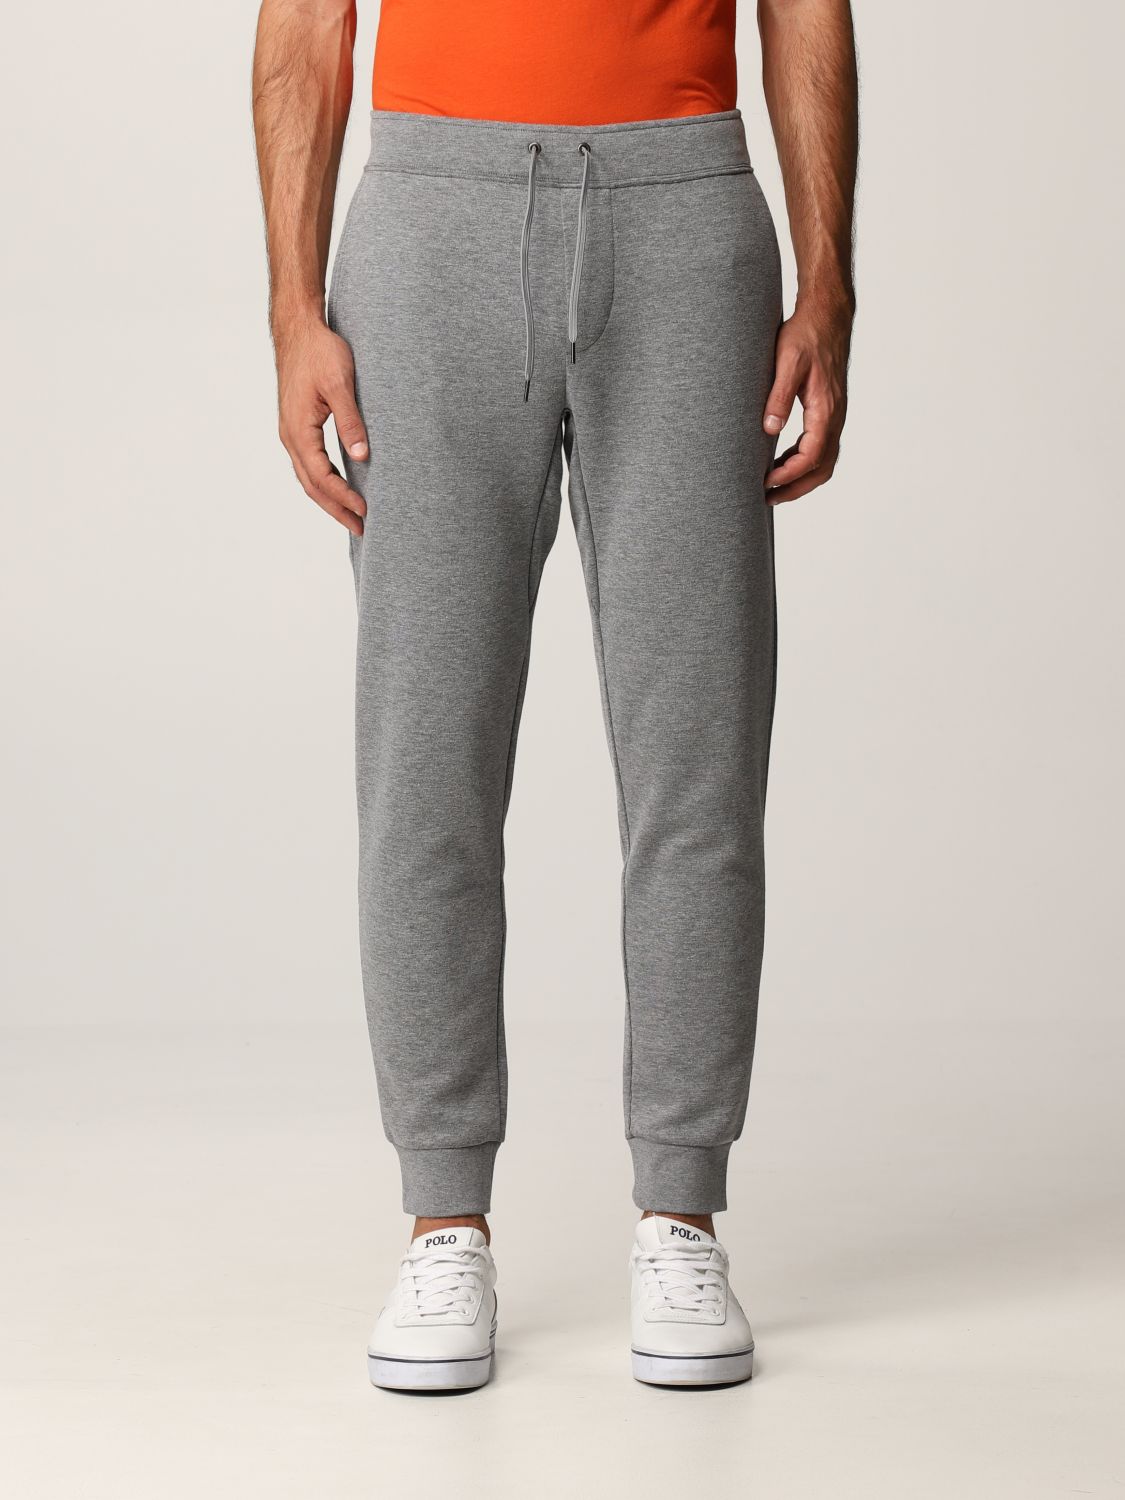 Polo Ralph Lauren Outlet: jogging pants - Grey 1 | Polo Ralph Lauren ...